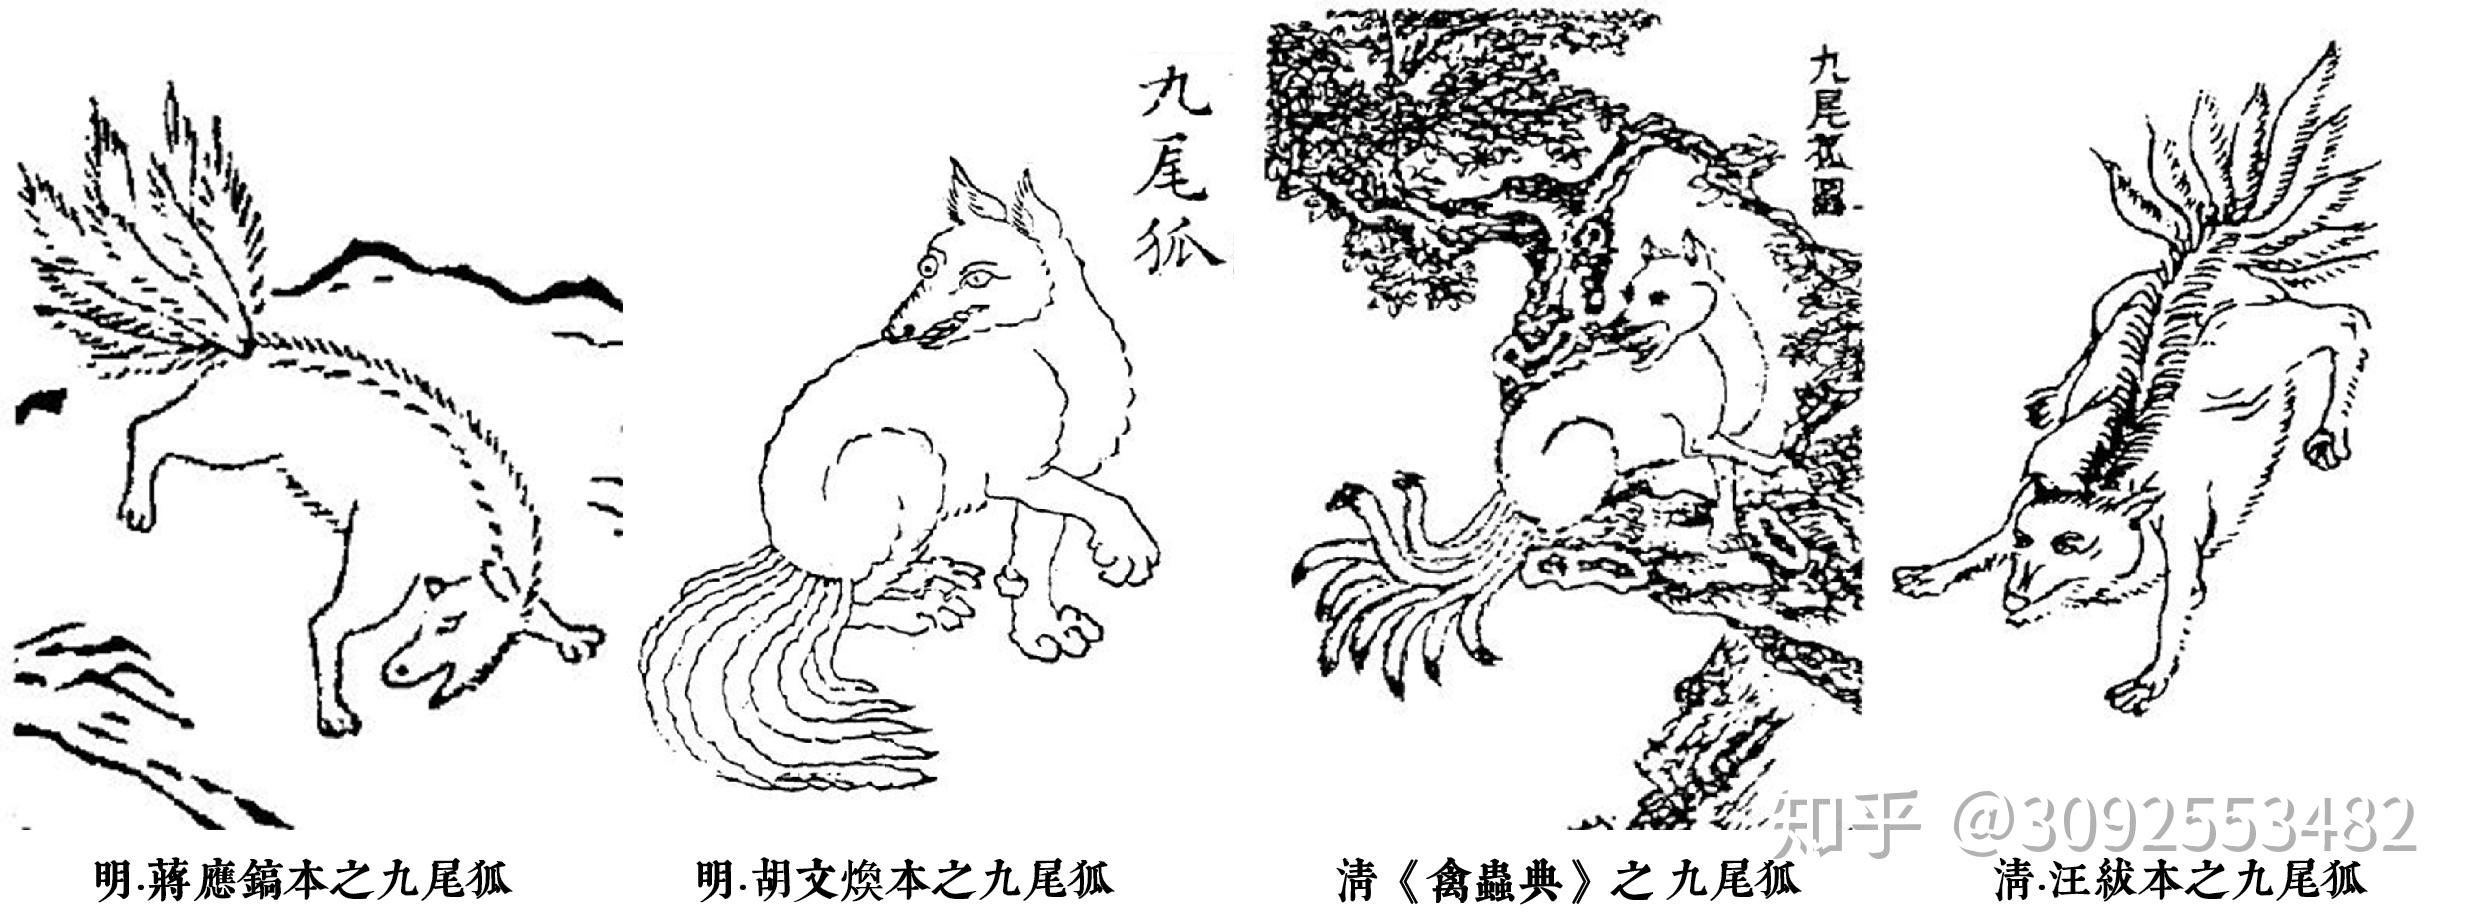 狐文化特辑【二】中国狐文化的早期形态插图(4)